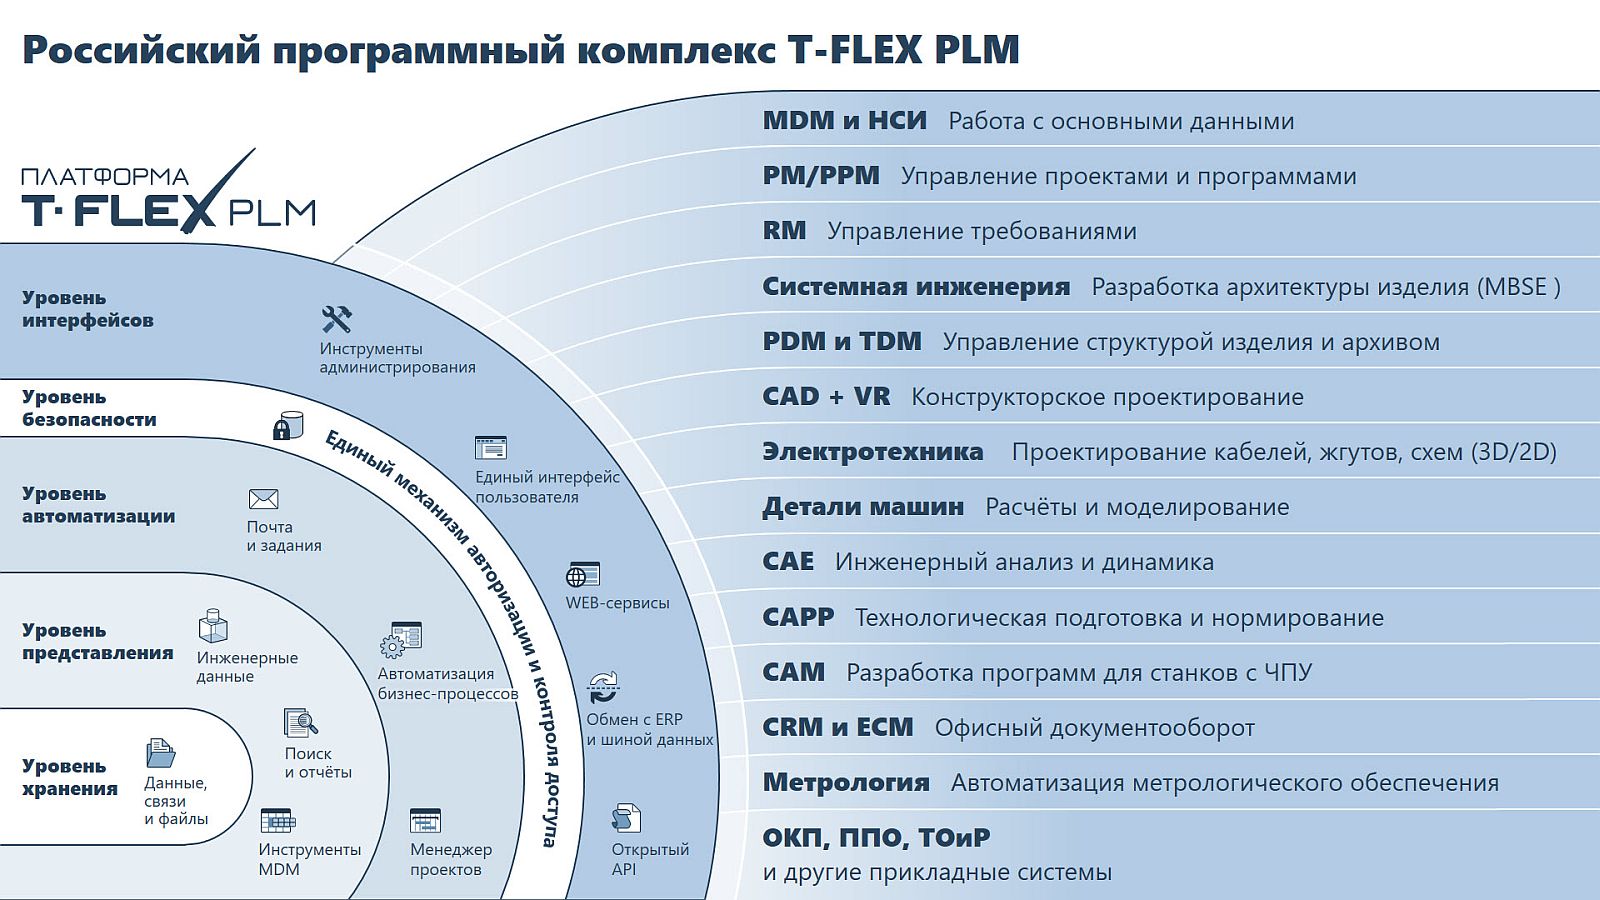 T-FLEX PLM